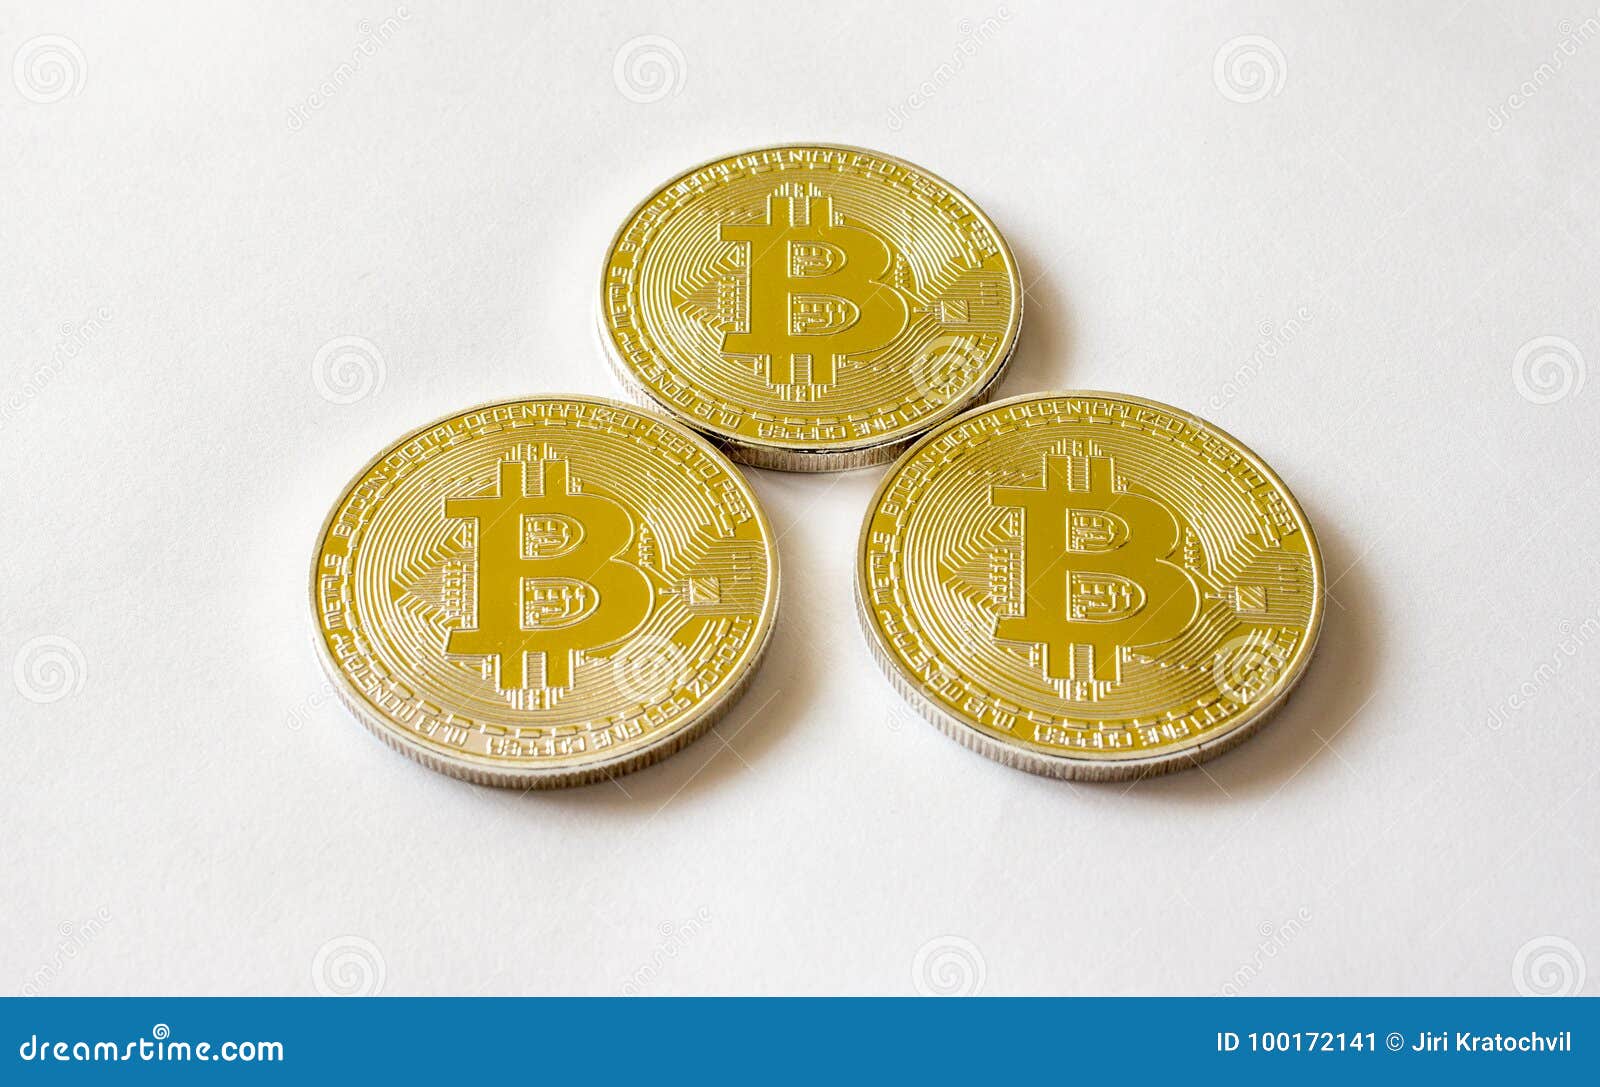 bitcoin atm in frankfurt